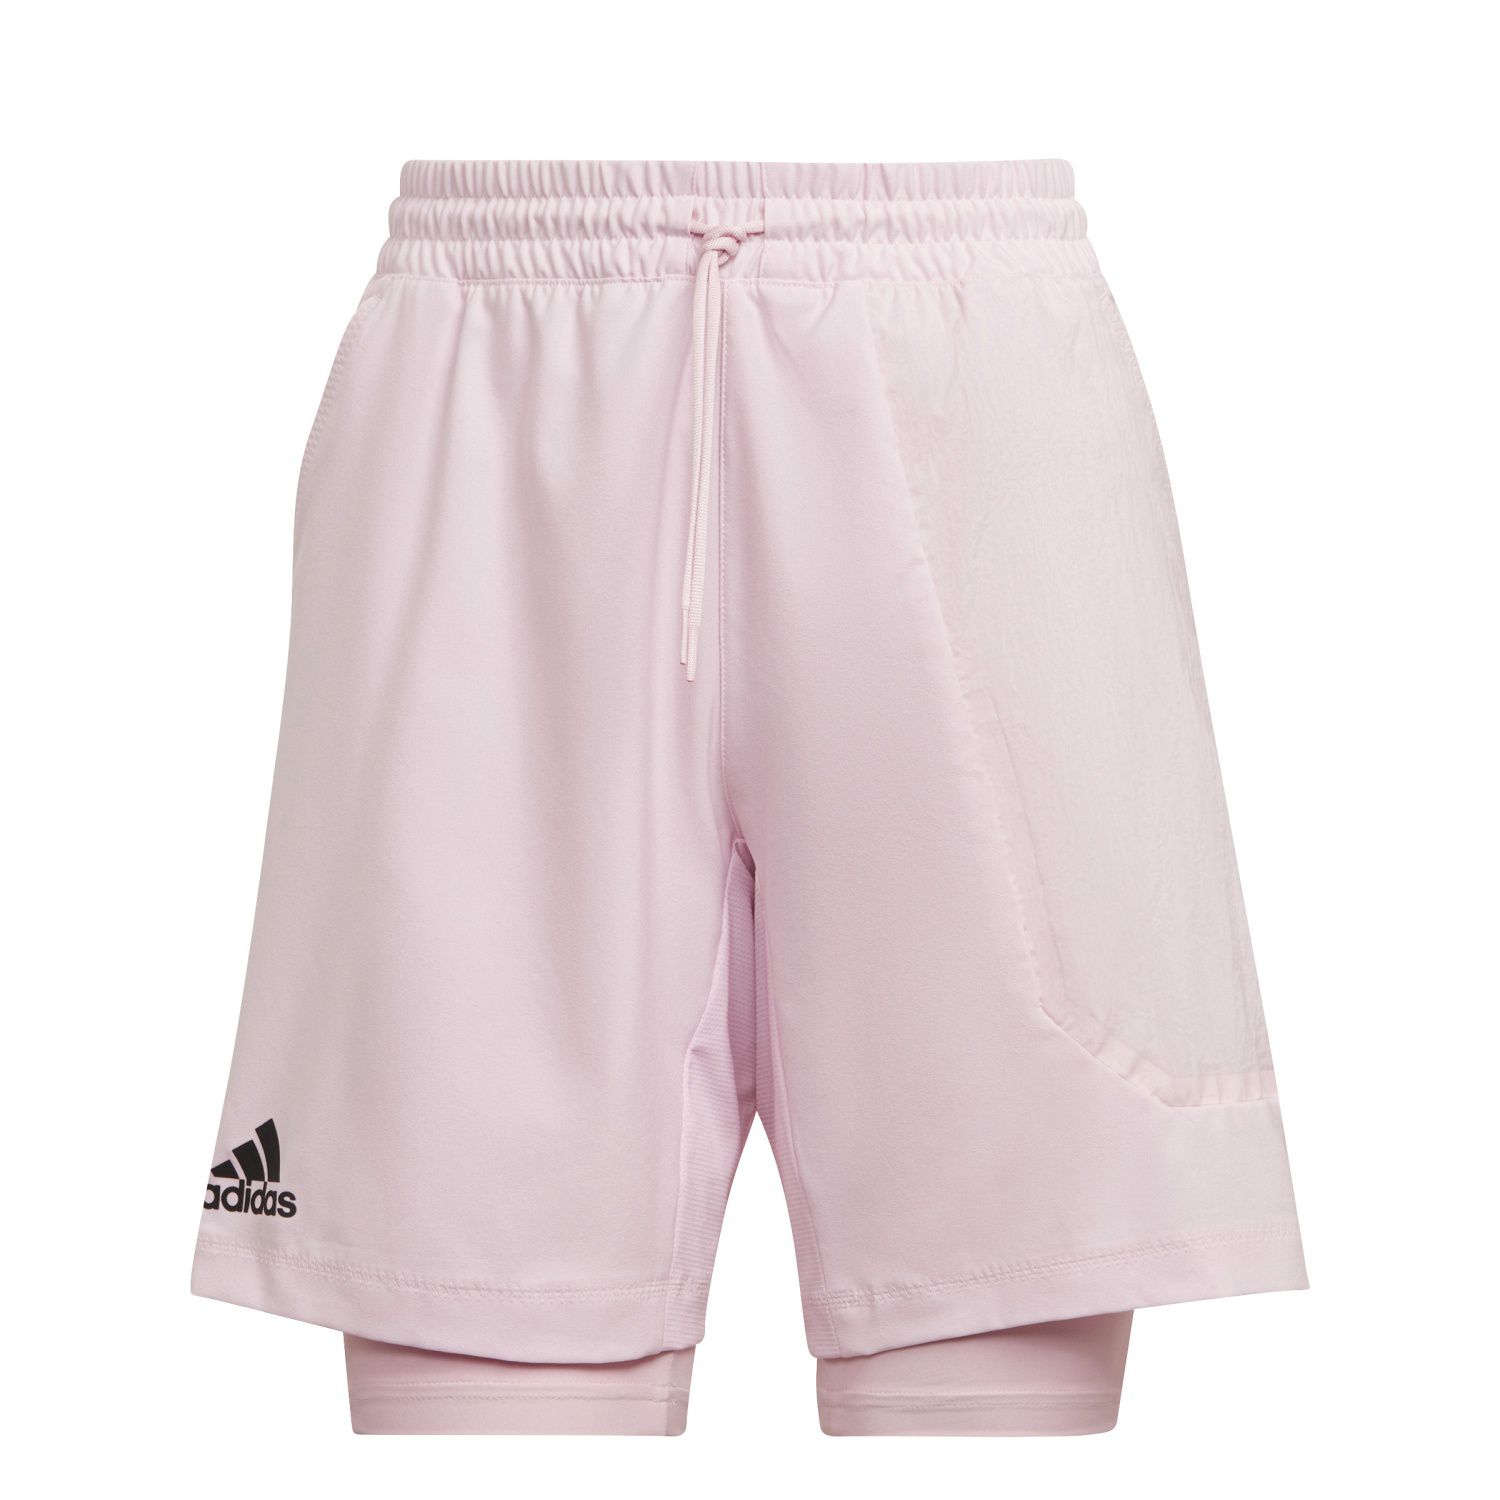 Shorts adidas Us Series 2n1 - rosa - 